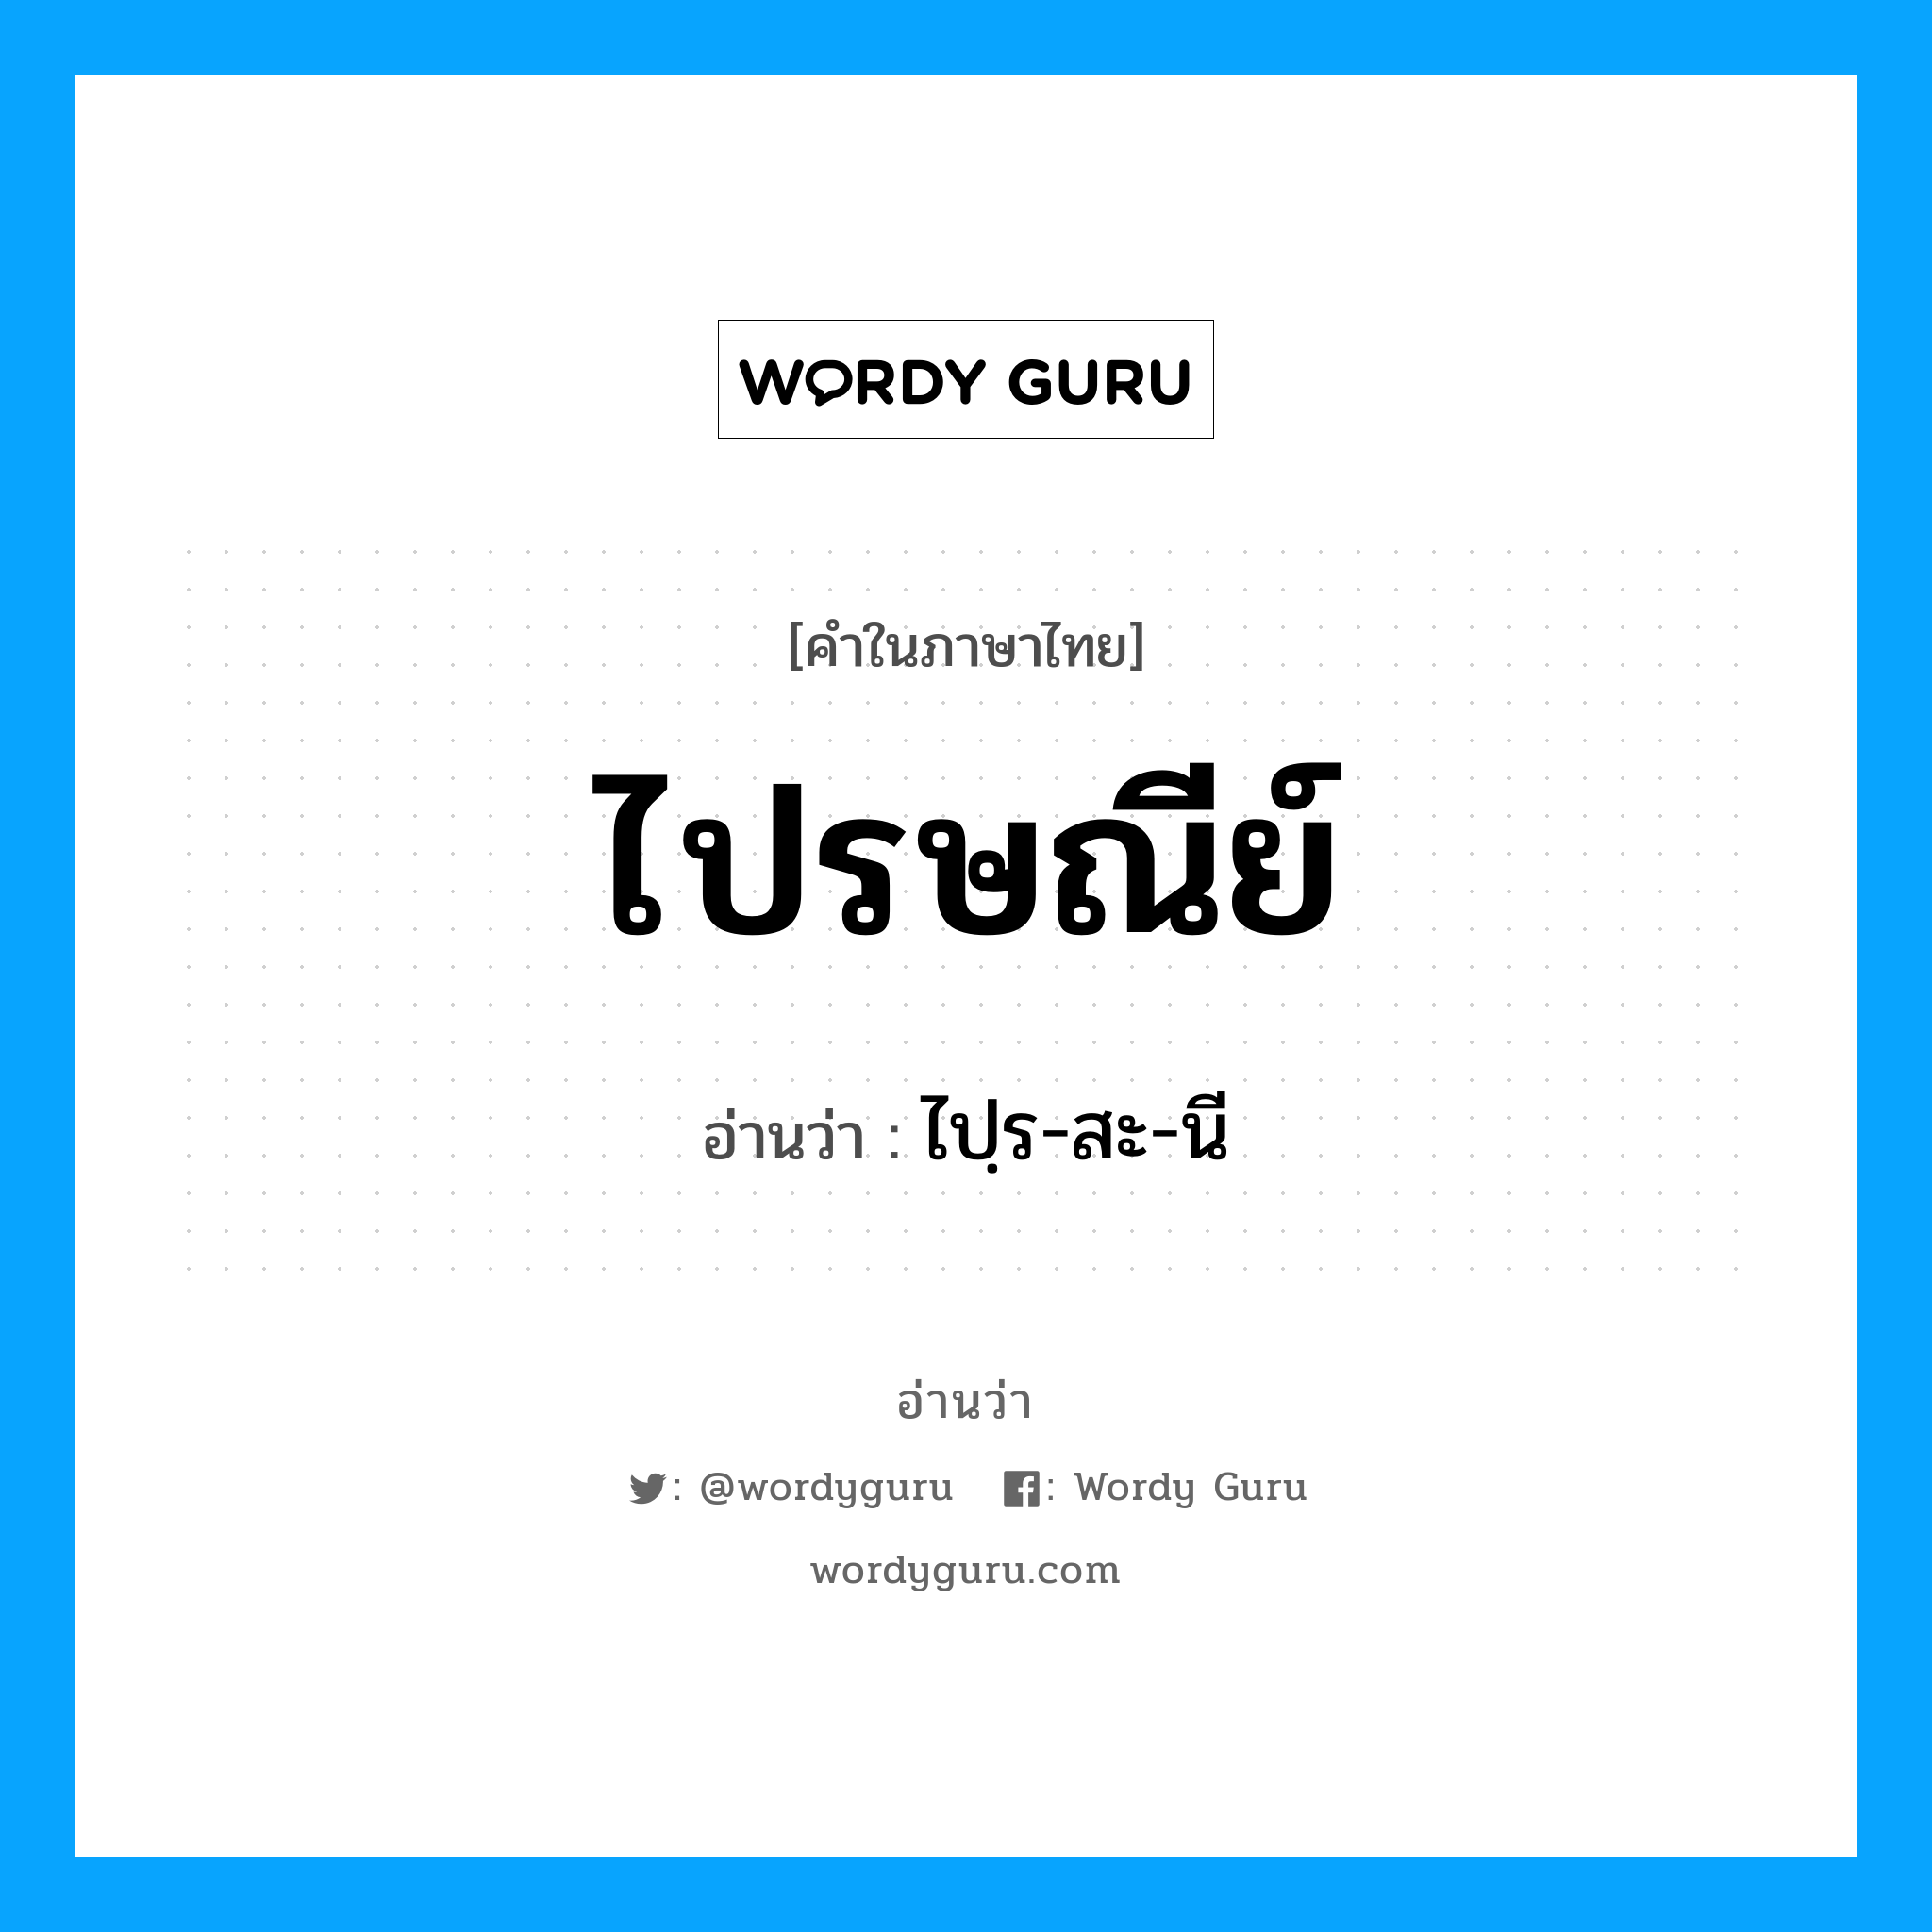 ไปฺร-สะ-นี เป็นคำอ่านของคำไหน?, คำในภาษาไทย ไปฺร-สะ-นี อ่านว่า ไปรษณีย์